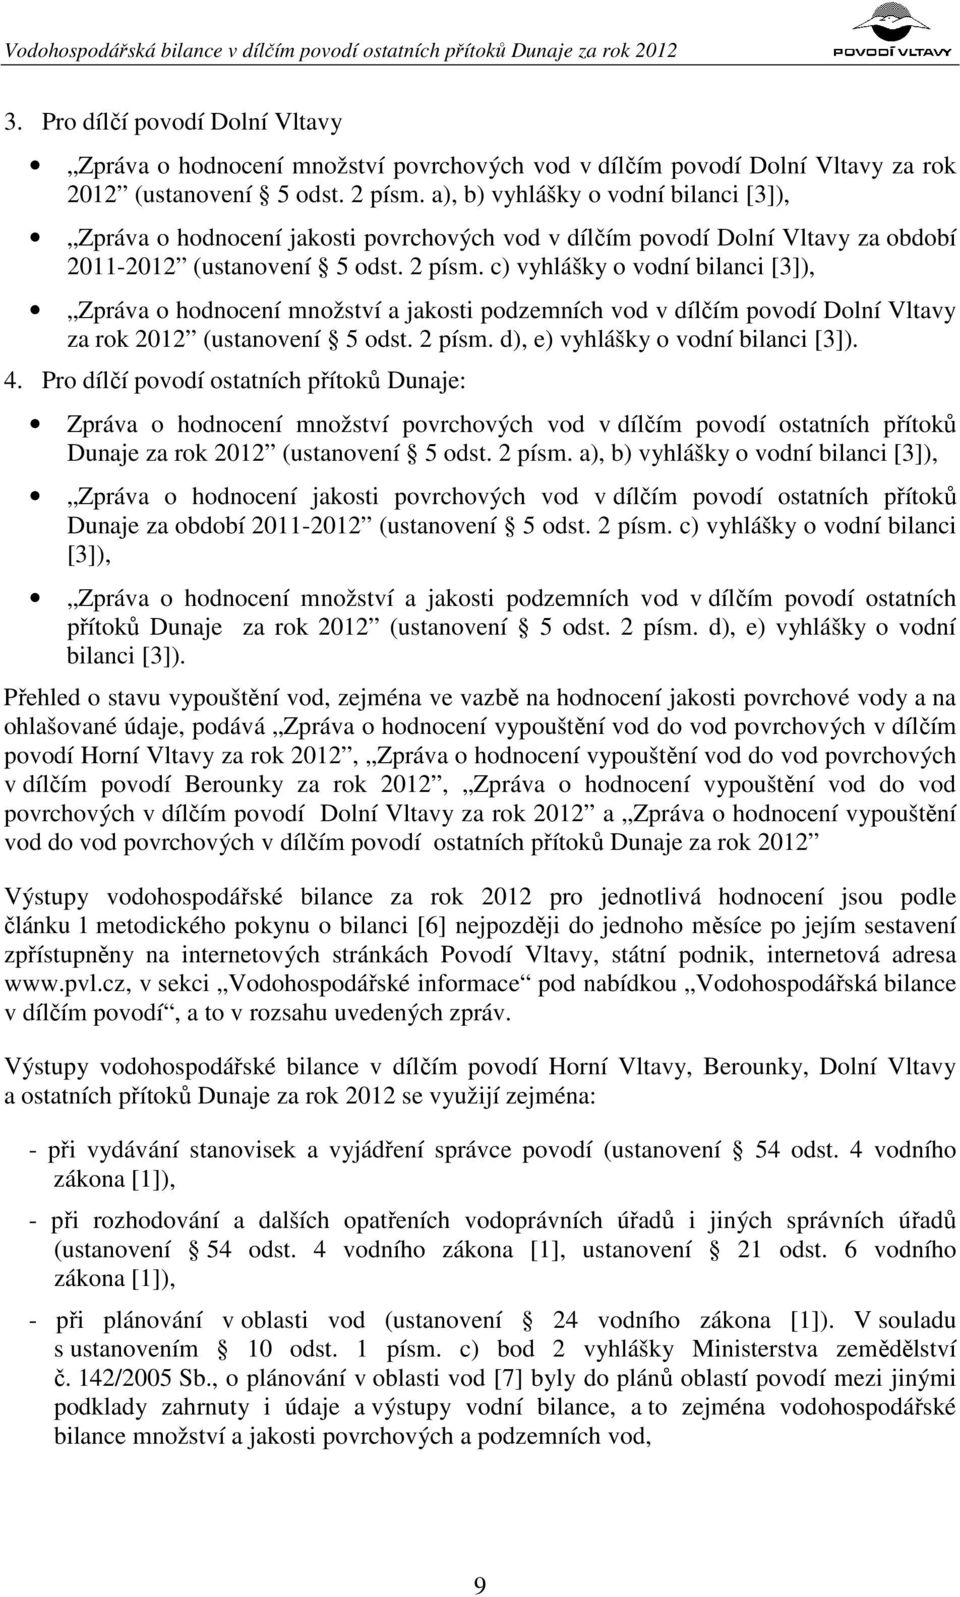 a), b) vyhlášky o vodní bilanci [3]), Zpráva o hodnocení jakosti povrchových vod v dílčím povodí Dolní Vltavy za období 2011-2012 (ustanovení 5 odst. 2 písm.